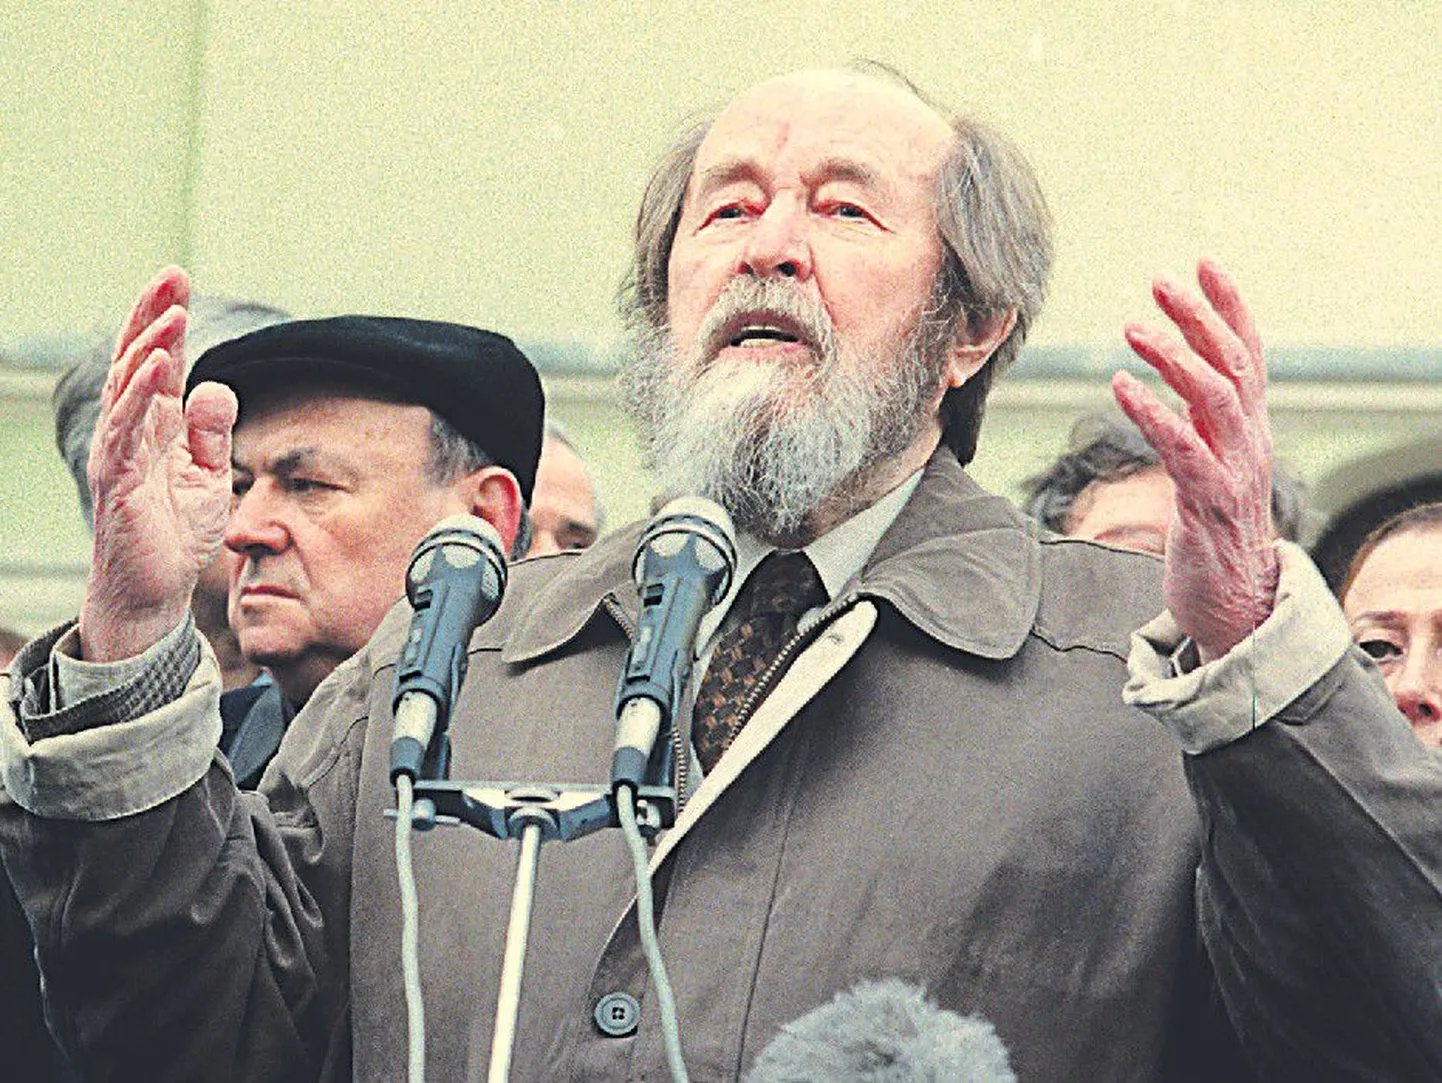 «Мы нуждаемся в зрении на большую даль вперед», — говорил Александр Солженицын.